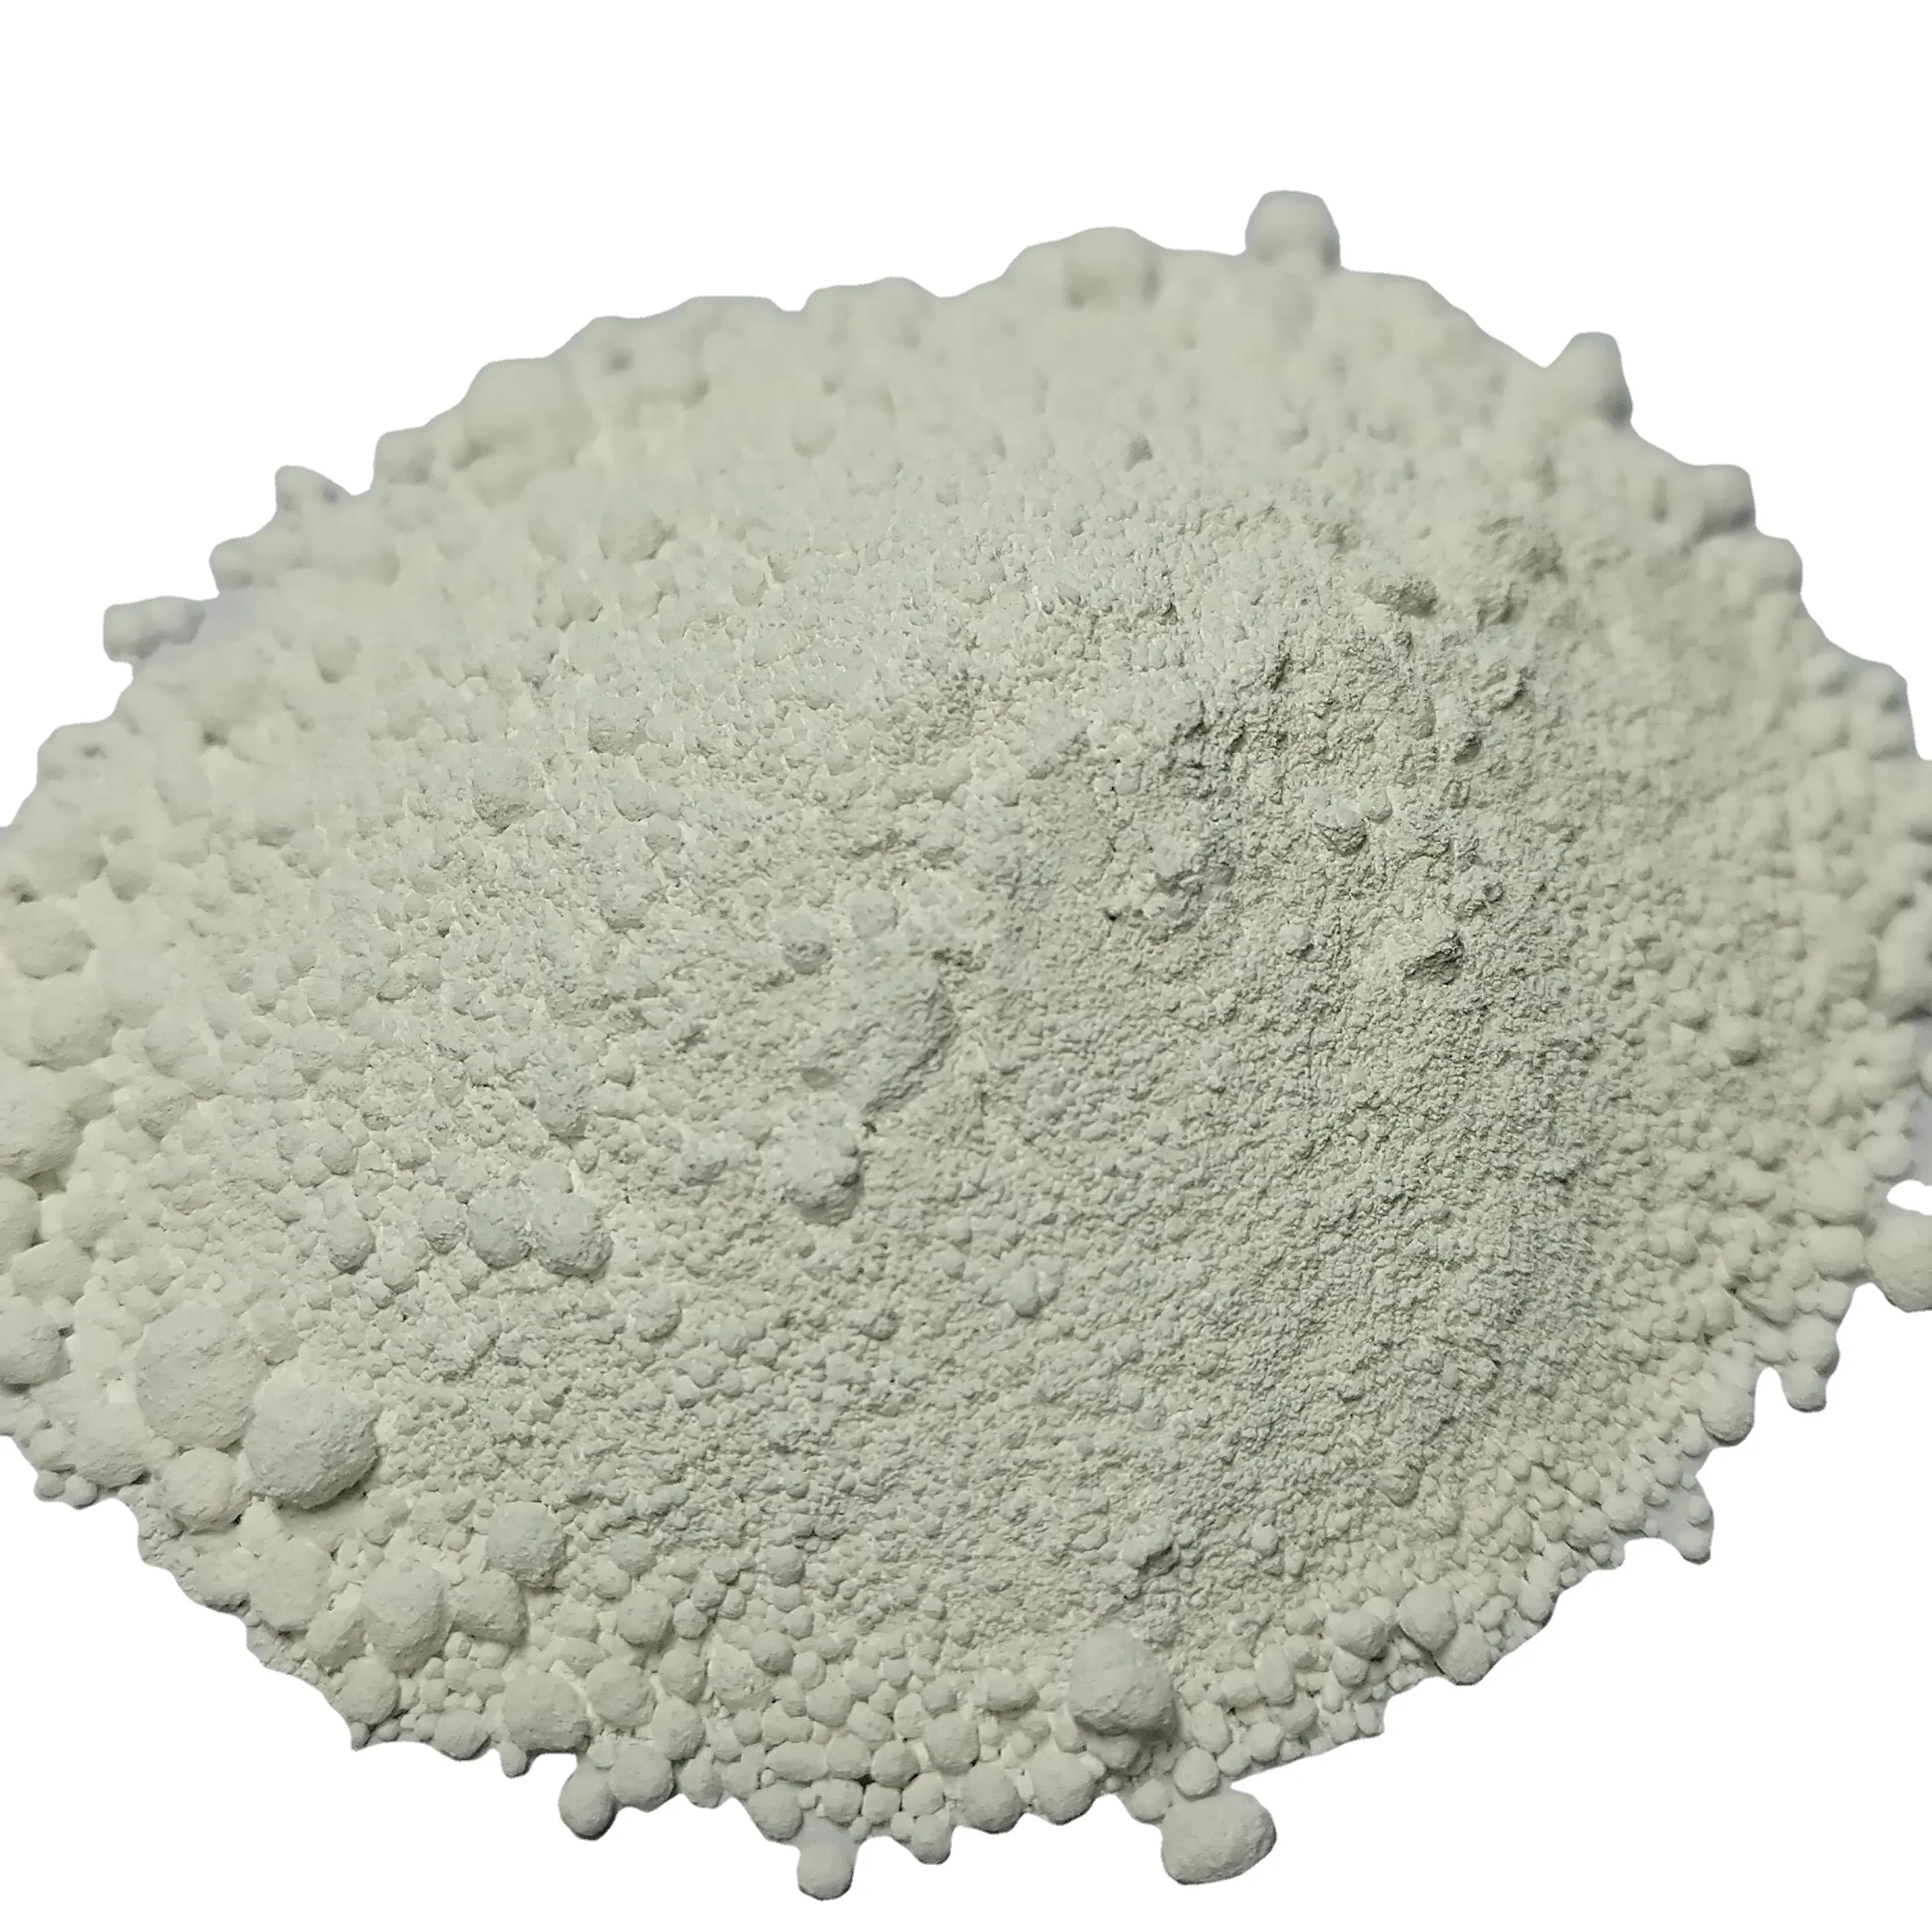 Промышленный диоксид титана tio2 по низкой цене tio2 диоксид титана для краски резиновая маточная смесь